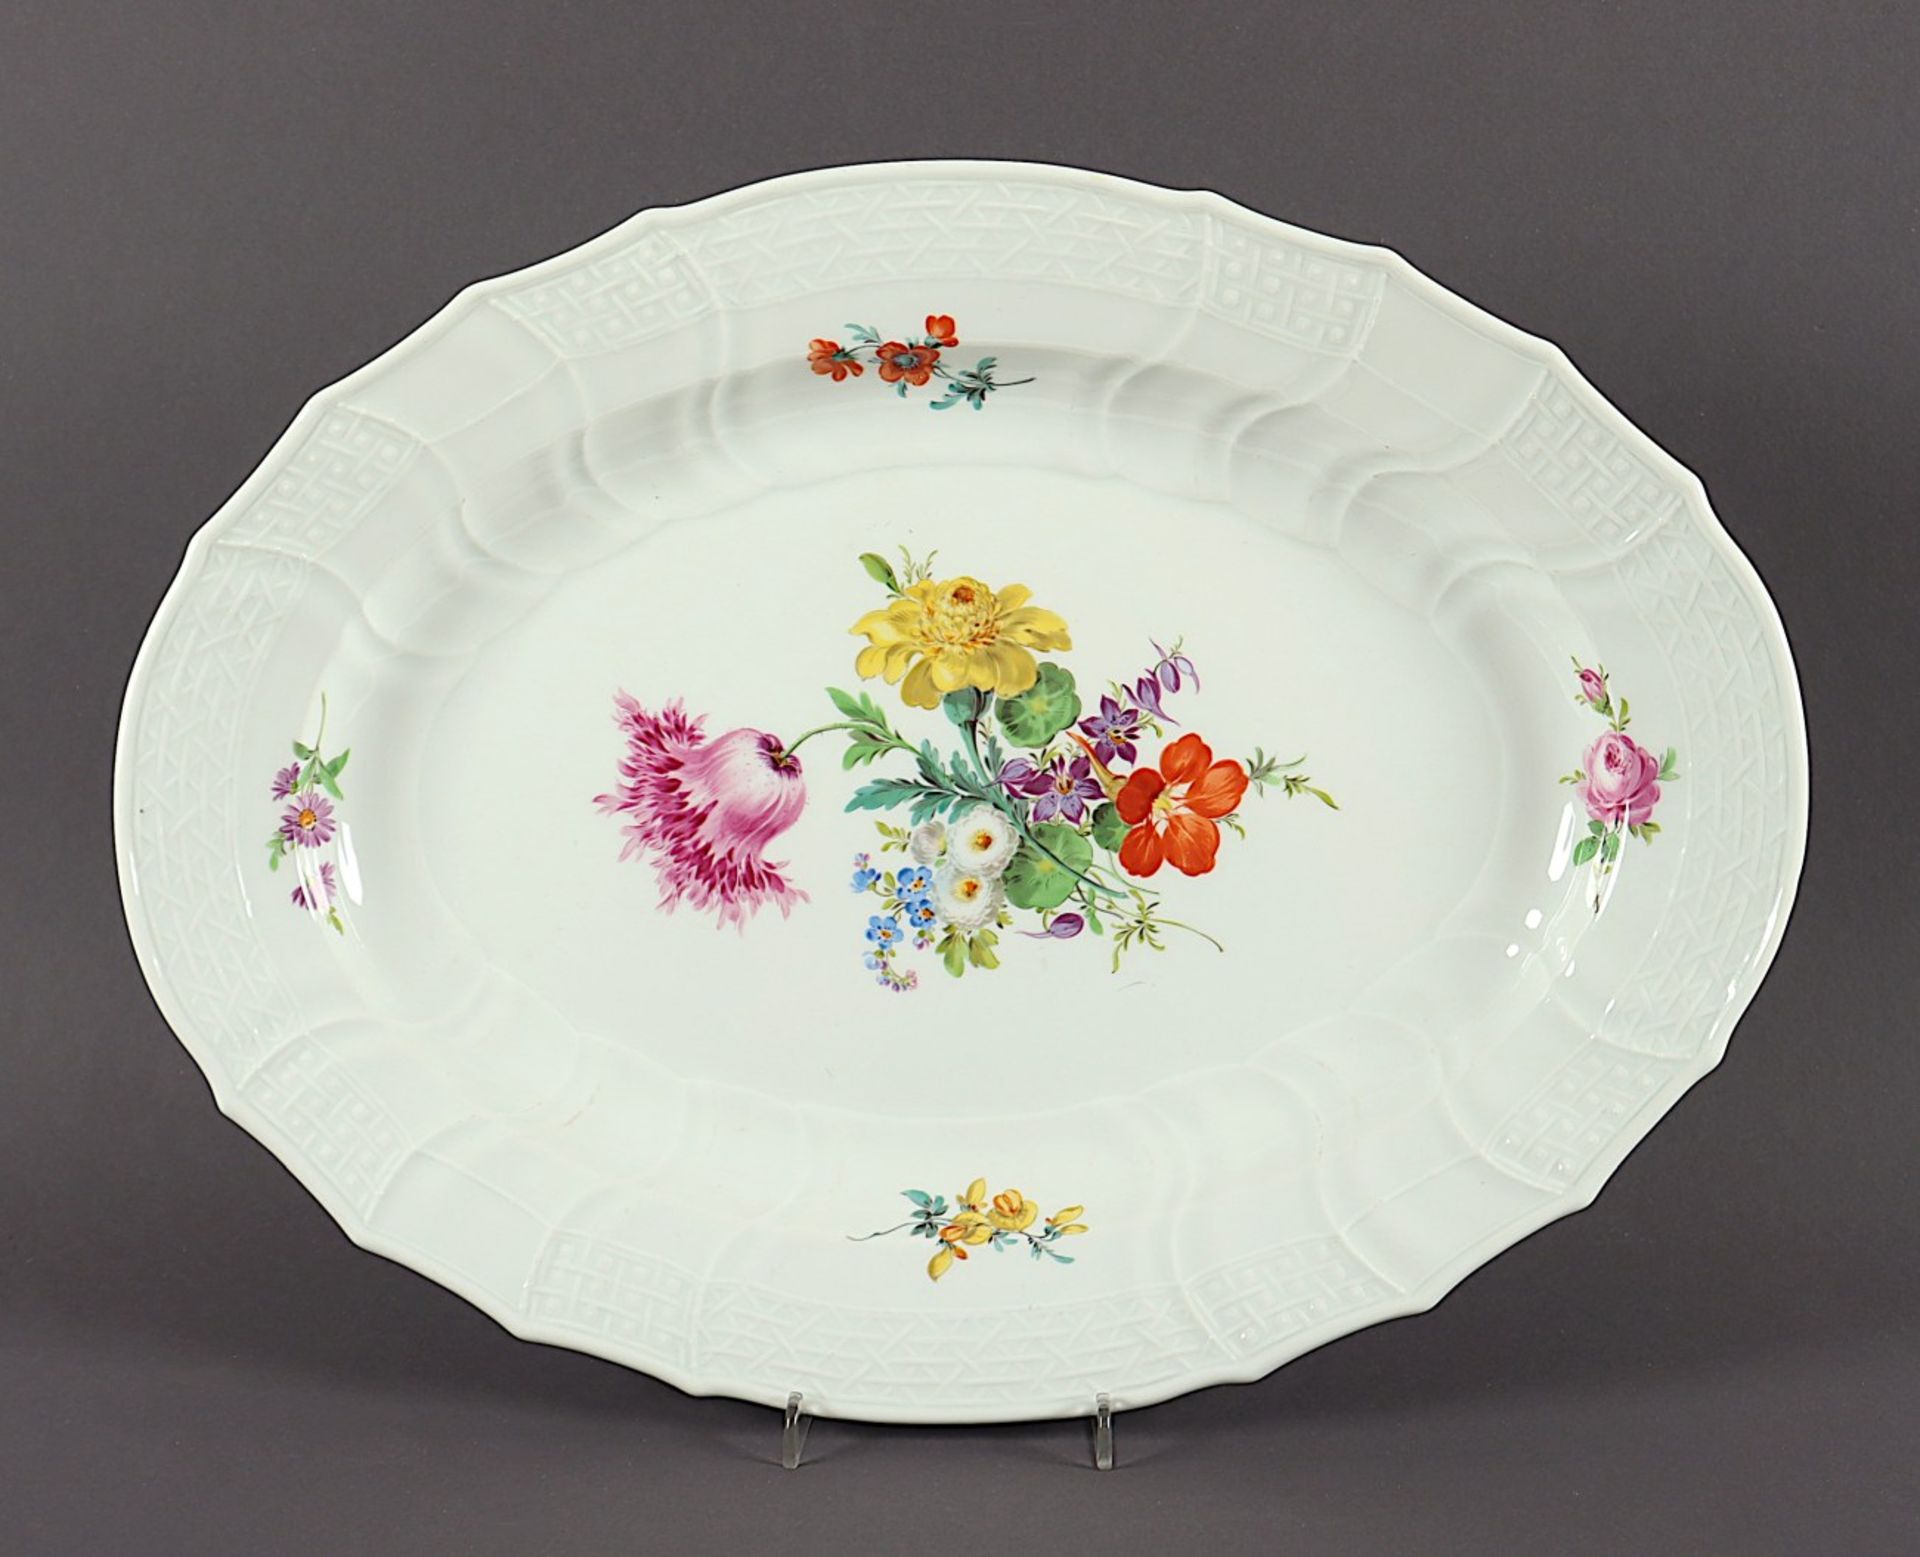 OVALE PLATTE, Brandenstein-Relief, farbig gemalte Blumen, L 43, minst.ber., MEISSEN, 20.Jh.